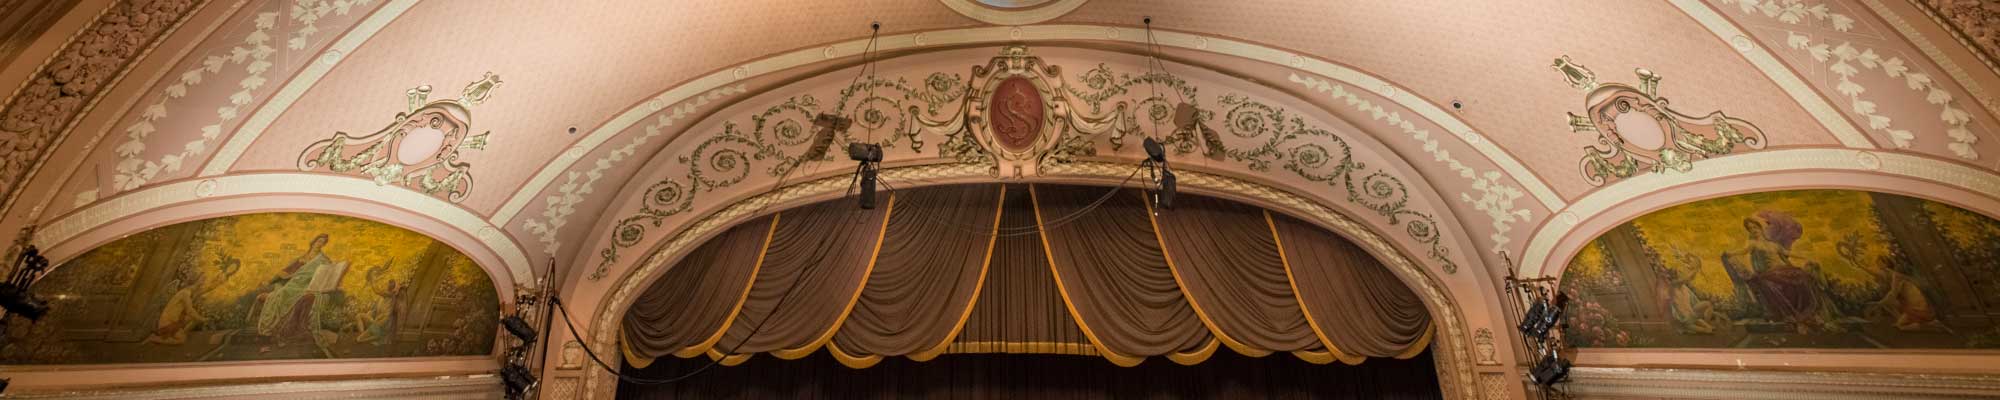 Merriam Theater - proscenium arch